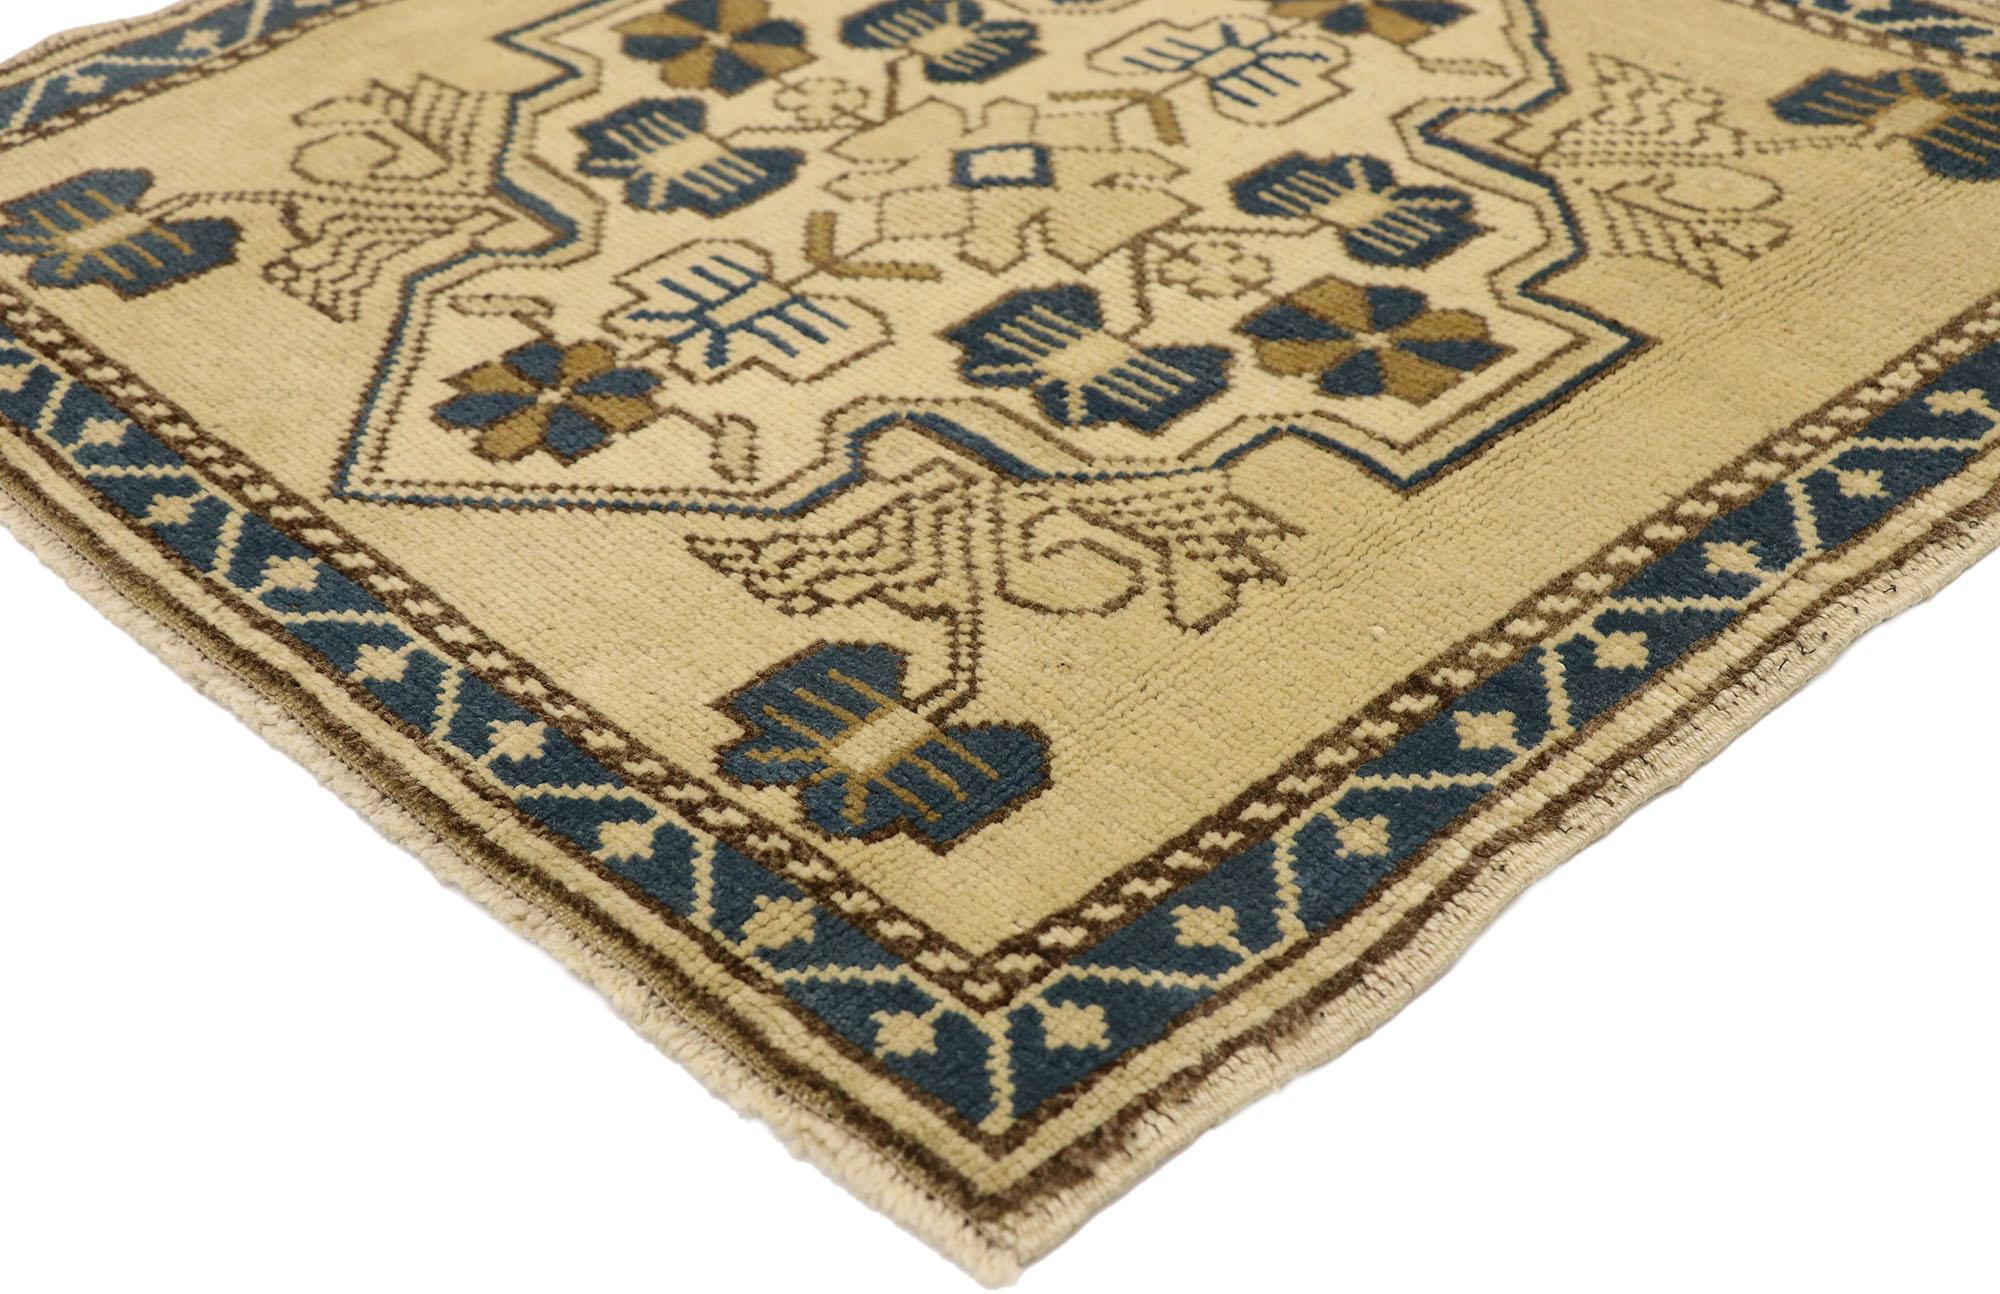 51258 Türkischer Yastik-Teppich Vintage, 02'02 x 02'02. In diesem handgeknüpften türkischen Yastik-Teppich aus Wolle vereinen sich mühelose Schönheit und schlichte Eleganz zu einem fesselnden Stück mit subtilem mediterranem Flair. Das ecrufarbene,